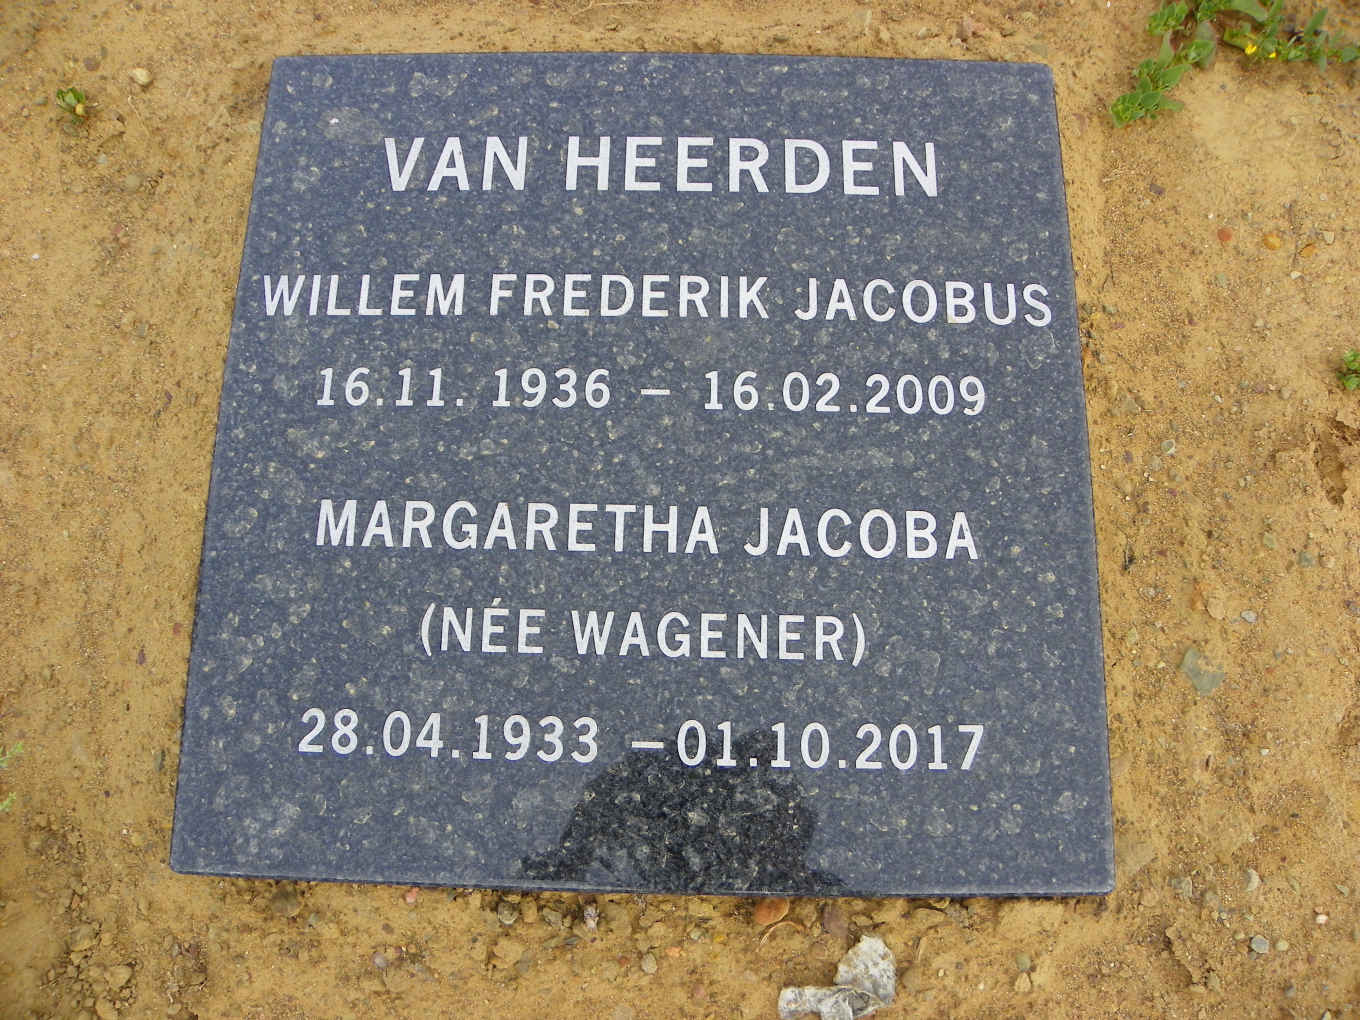 HEERDEN Willem Frederik Jacobus, van 1936-2009 & Margaretha Jacoba WAGENER 1933-2017